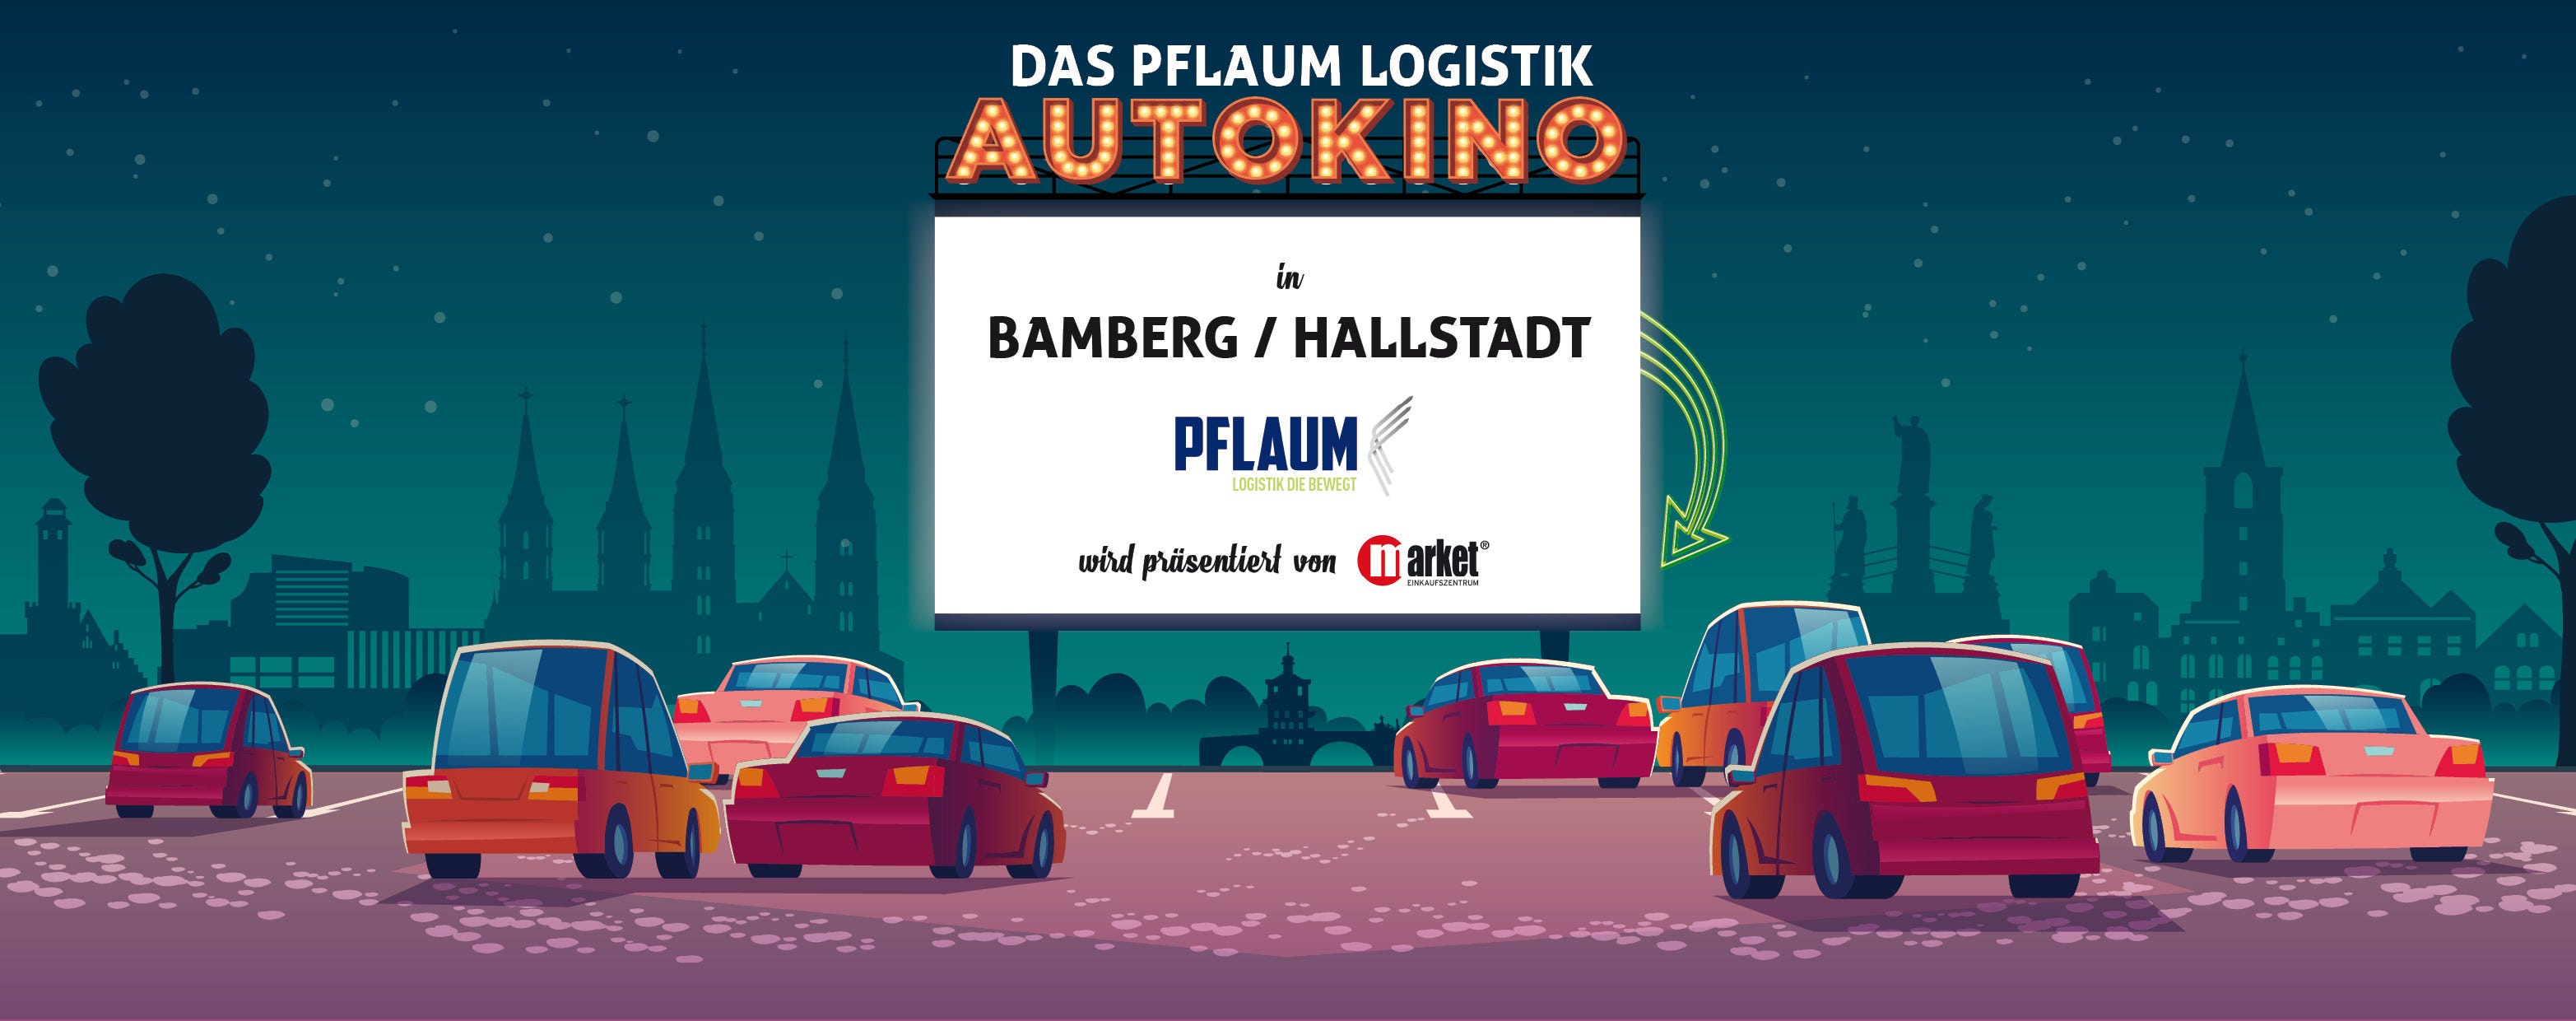 autokino-bamberg-hallstadt-pflaum-logistik-autokino